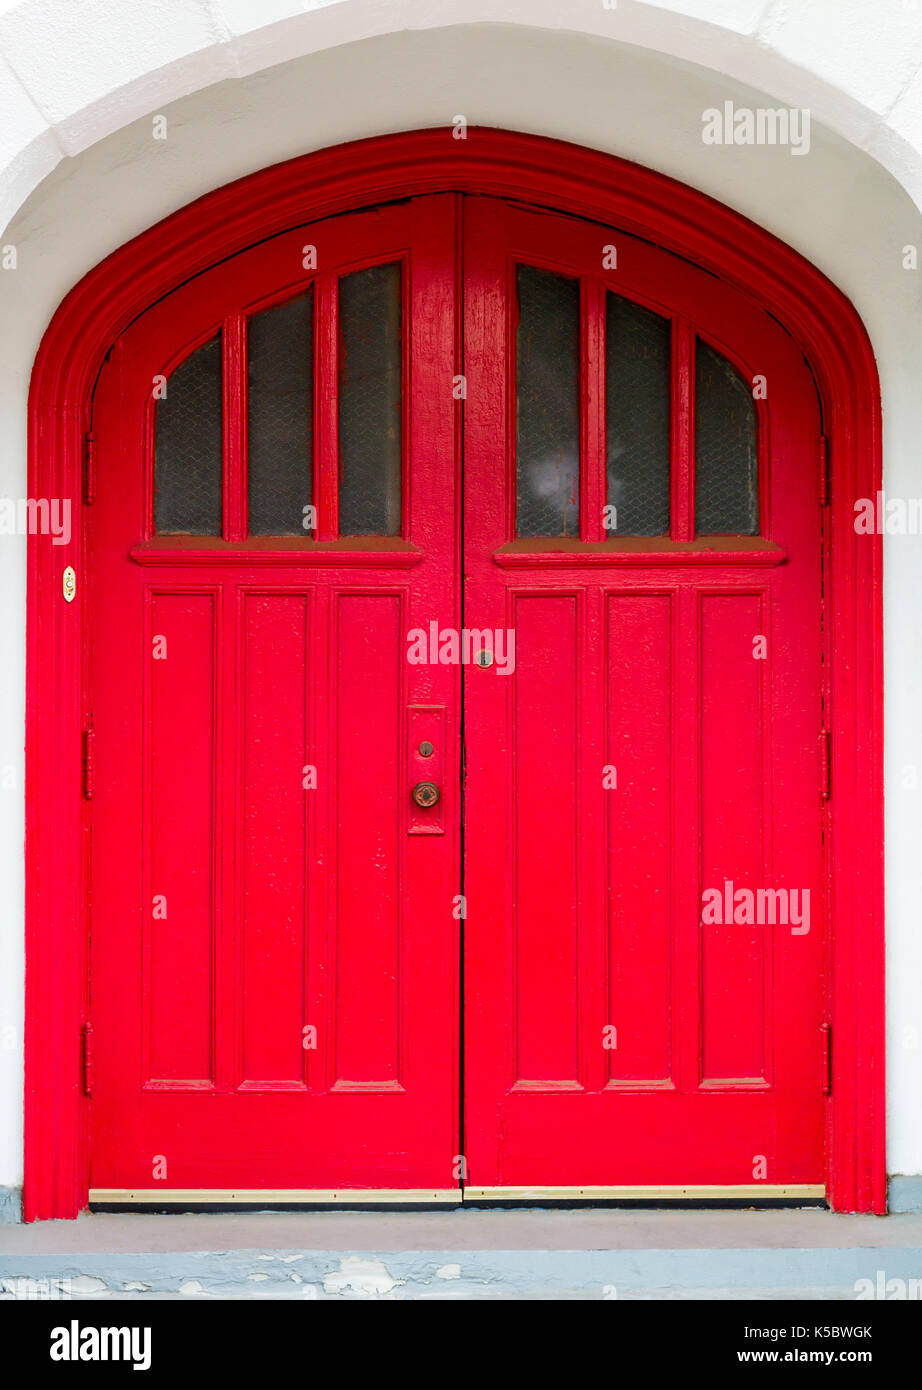 Puertas cerradas en una iglesia fotografías e imágenes de alta resolución -  Alamy